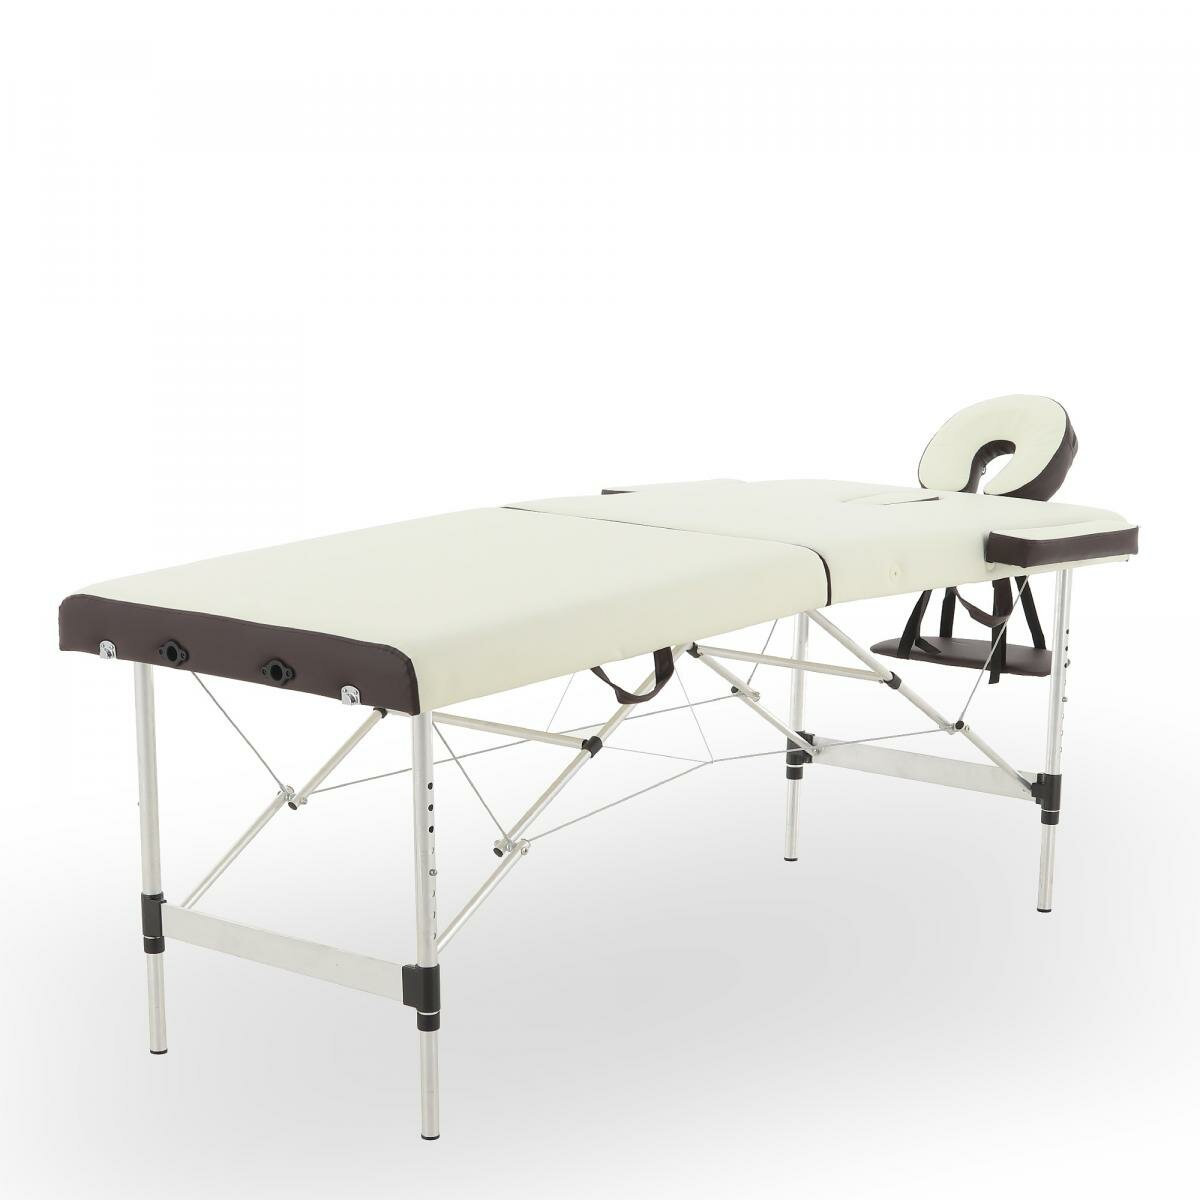 Массажный стол переносной Med-Mos JFAL01A 2-х секционный на алюминиевой раме, кремовый/коричневый